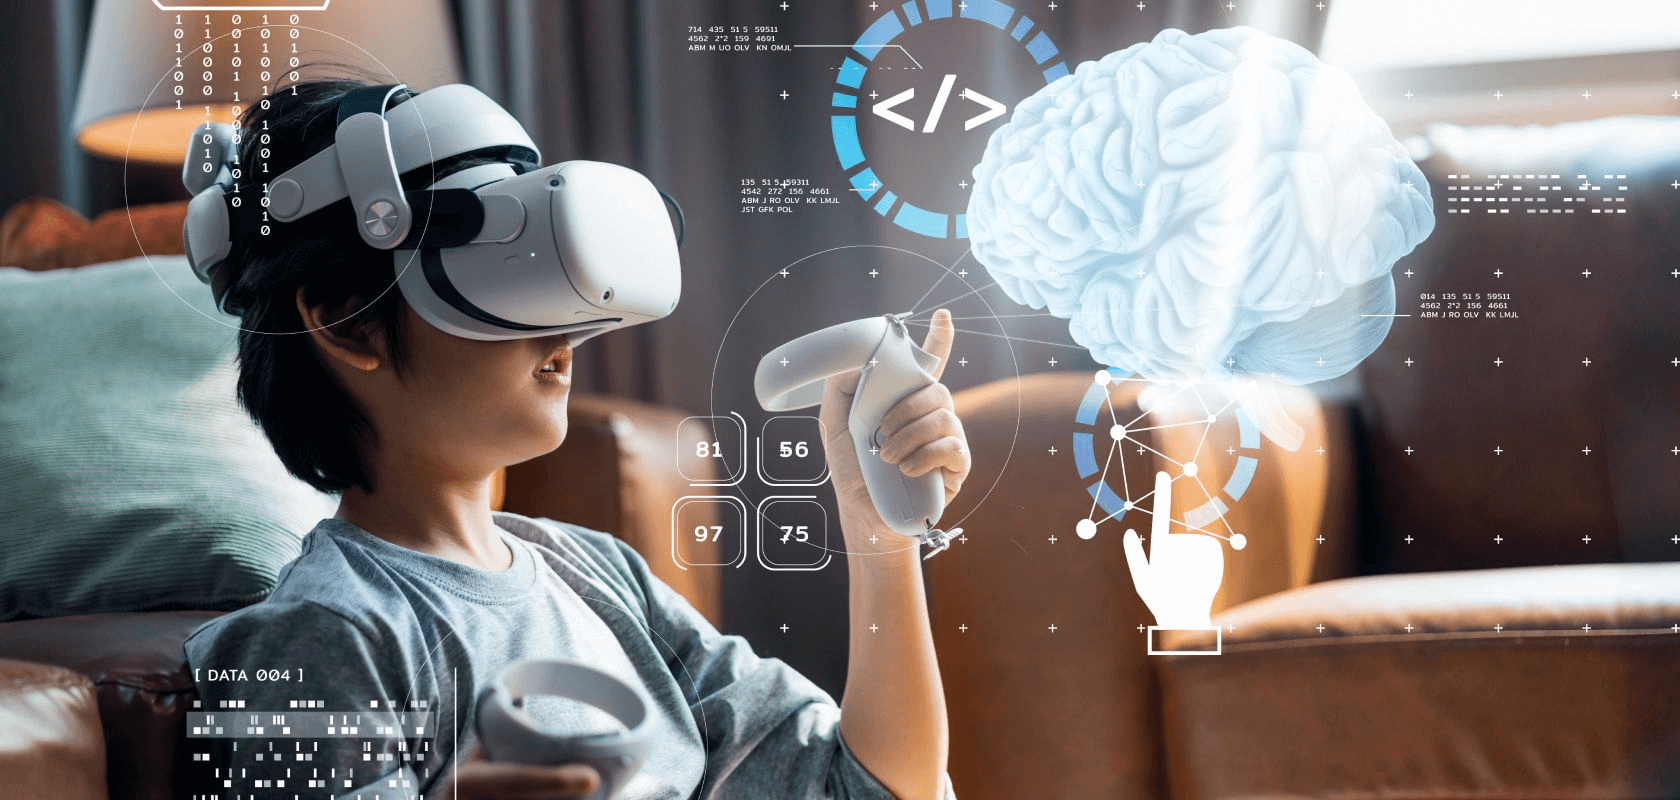 VR虚拟仿真实验教学平 台_技术与应用探讨